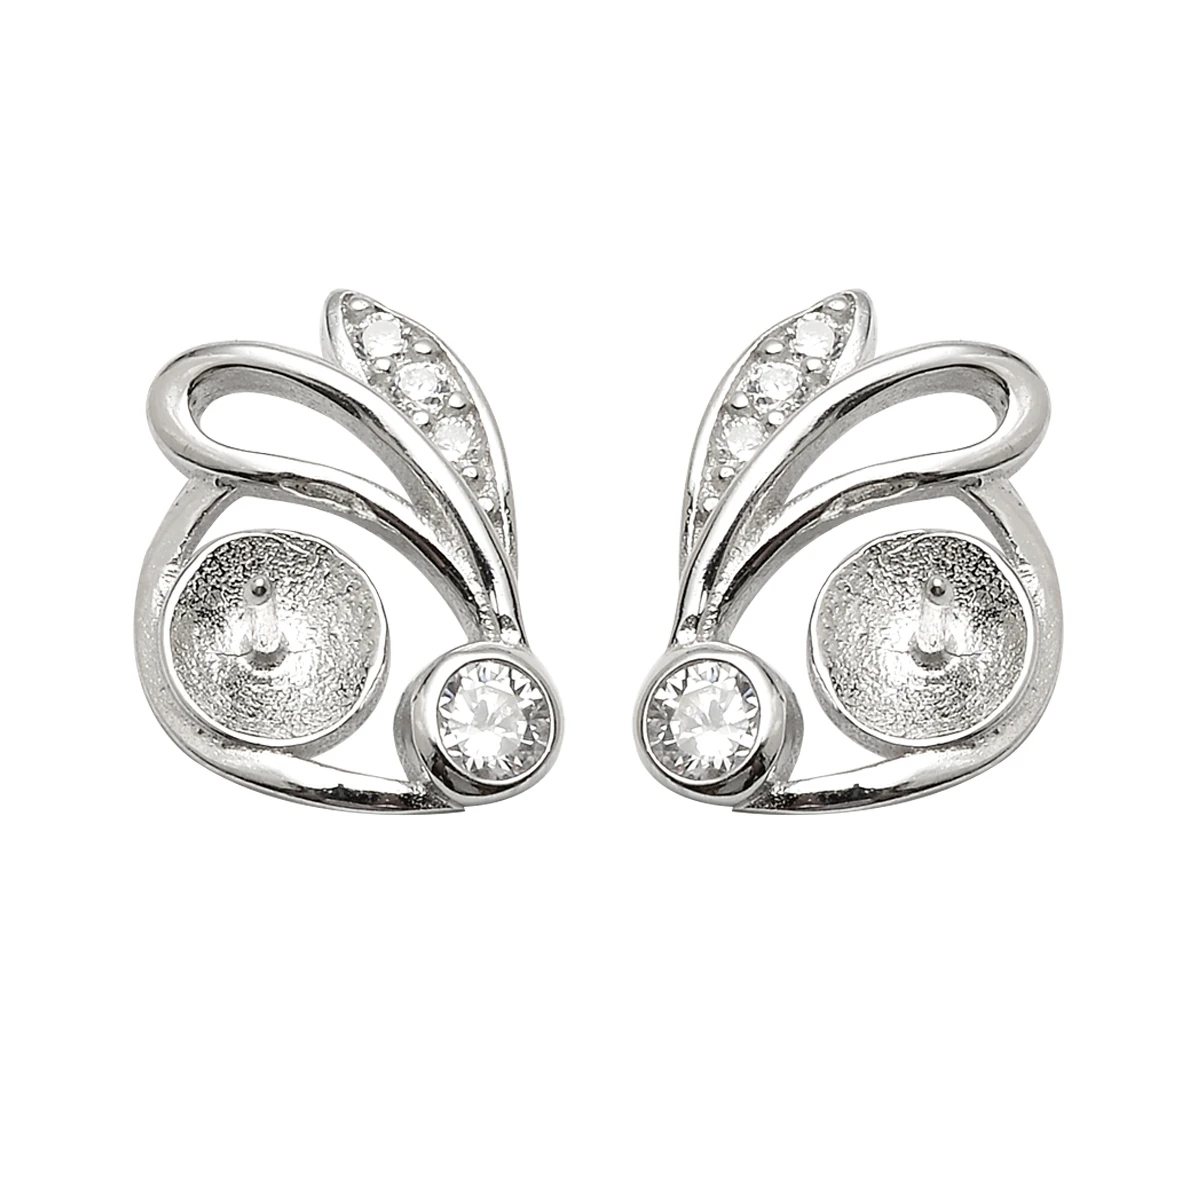 

SSE152 Cute Rabbit Earring Stud 925 Sterling Silver Settings Zircons Pearl Findings for Girls Women